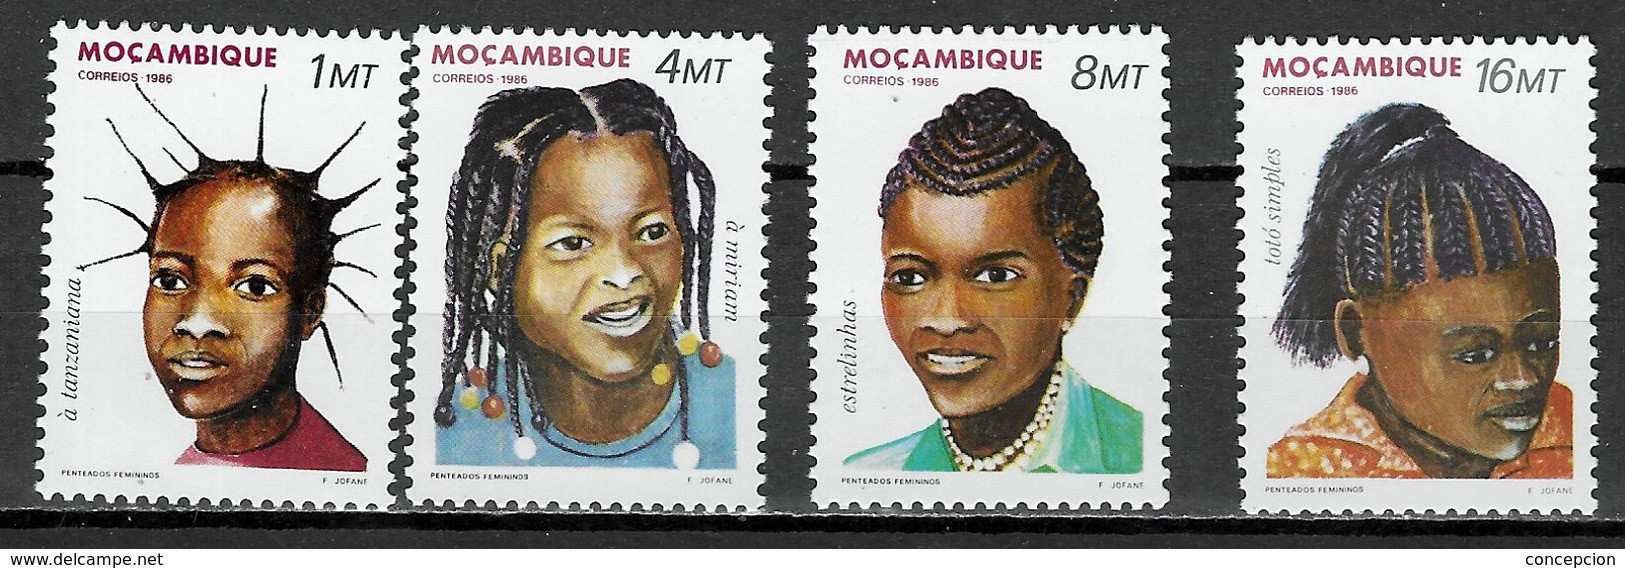 MOZAMBIQUE Nº 1033 AL 1036 - Mozambique